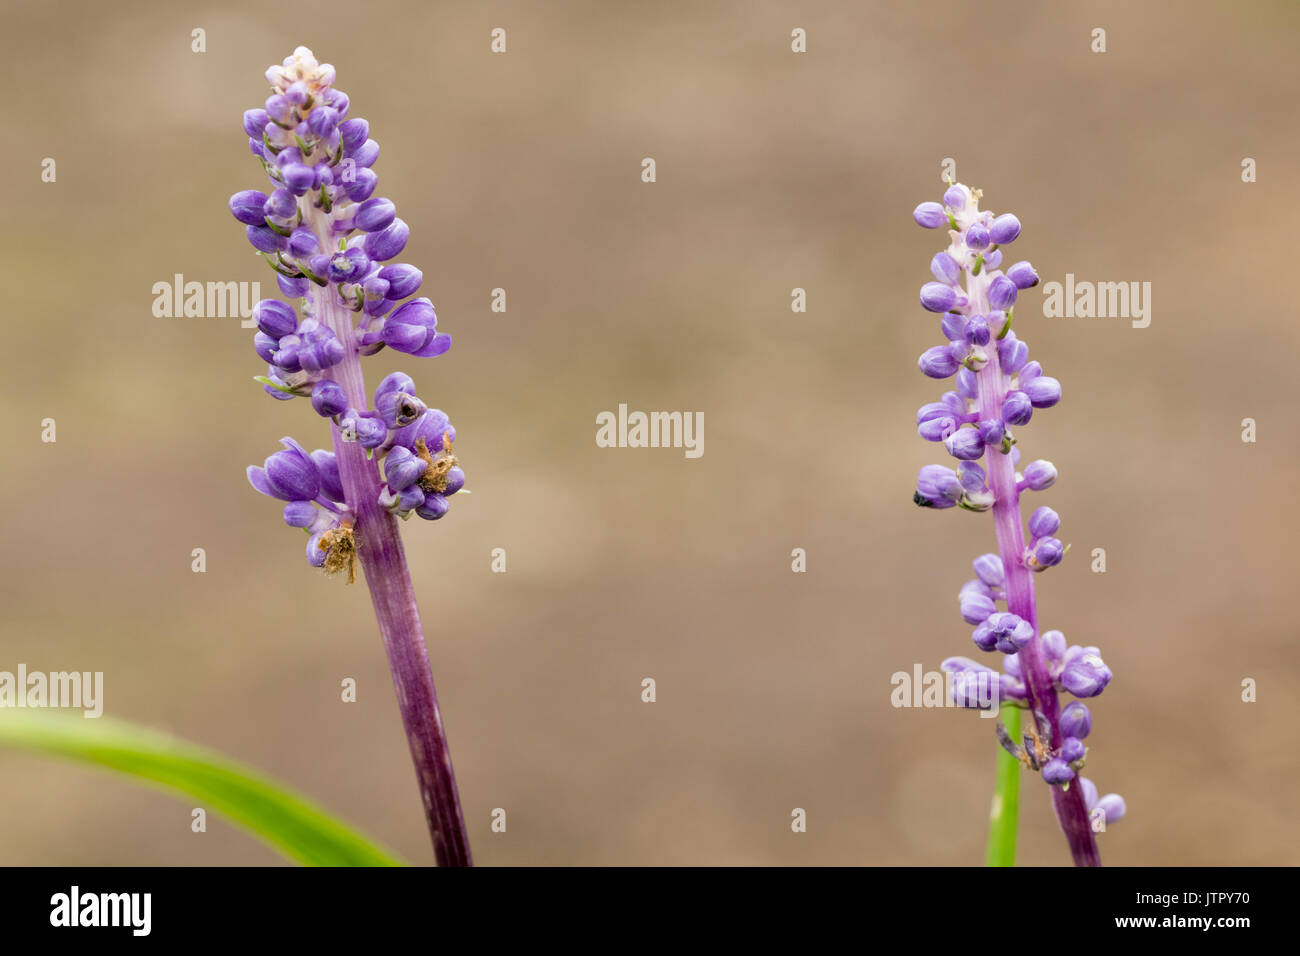 Lits 1 tiges florales de plus en plus faible le gazon, liriope evergreen lily muscari, montrant les bourgeons bleu-violet Banque D'Images